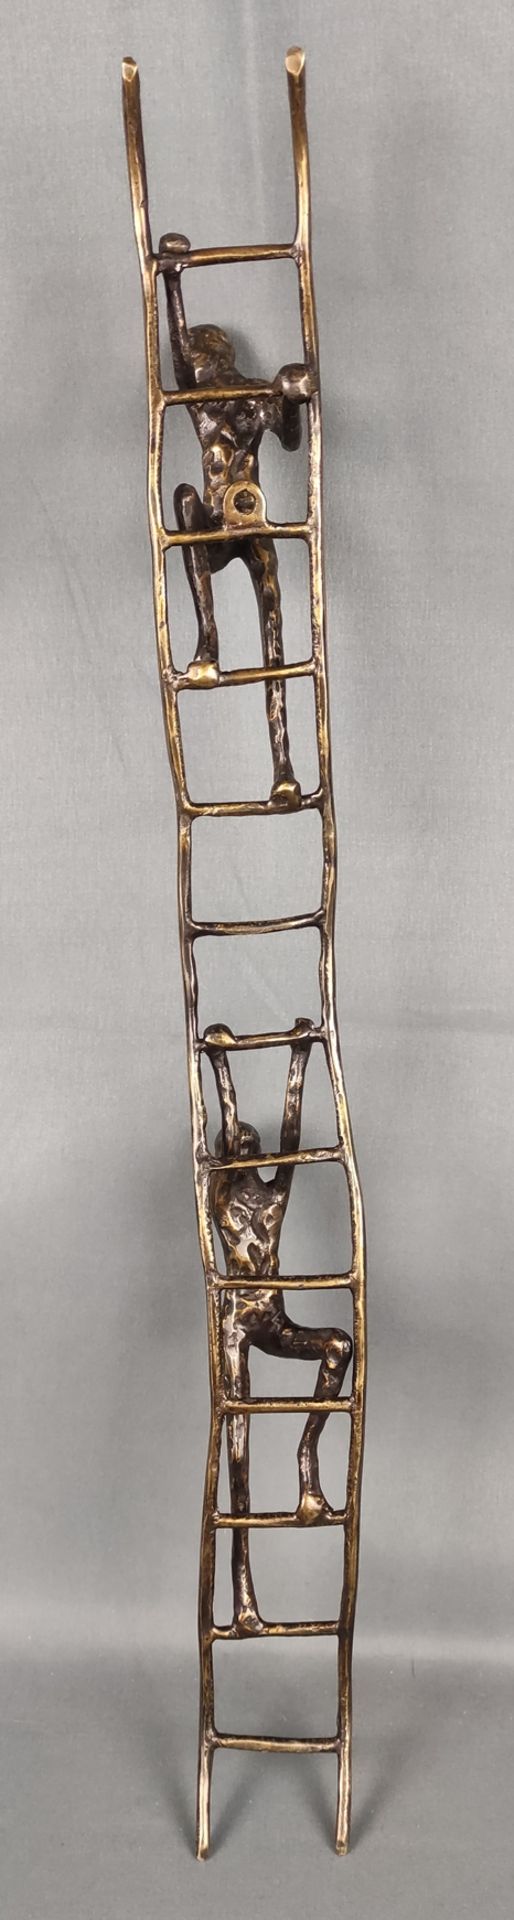 Unbekannt (20. Jahrhundert) "Kletternde Männer", zwei männliche Figuren klettern eine Leiter hoch,  - Bild 3 aus 3